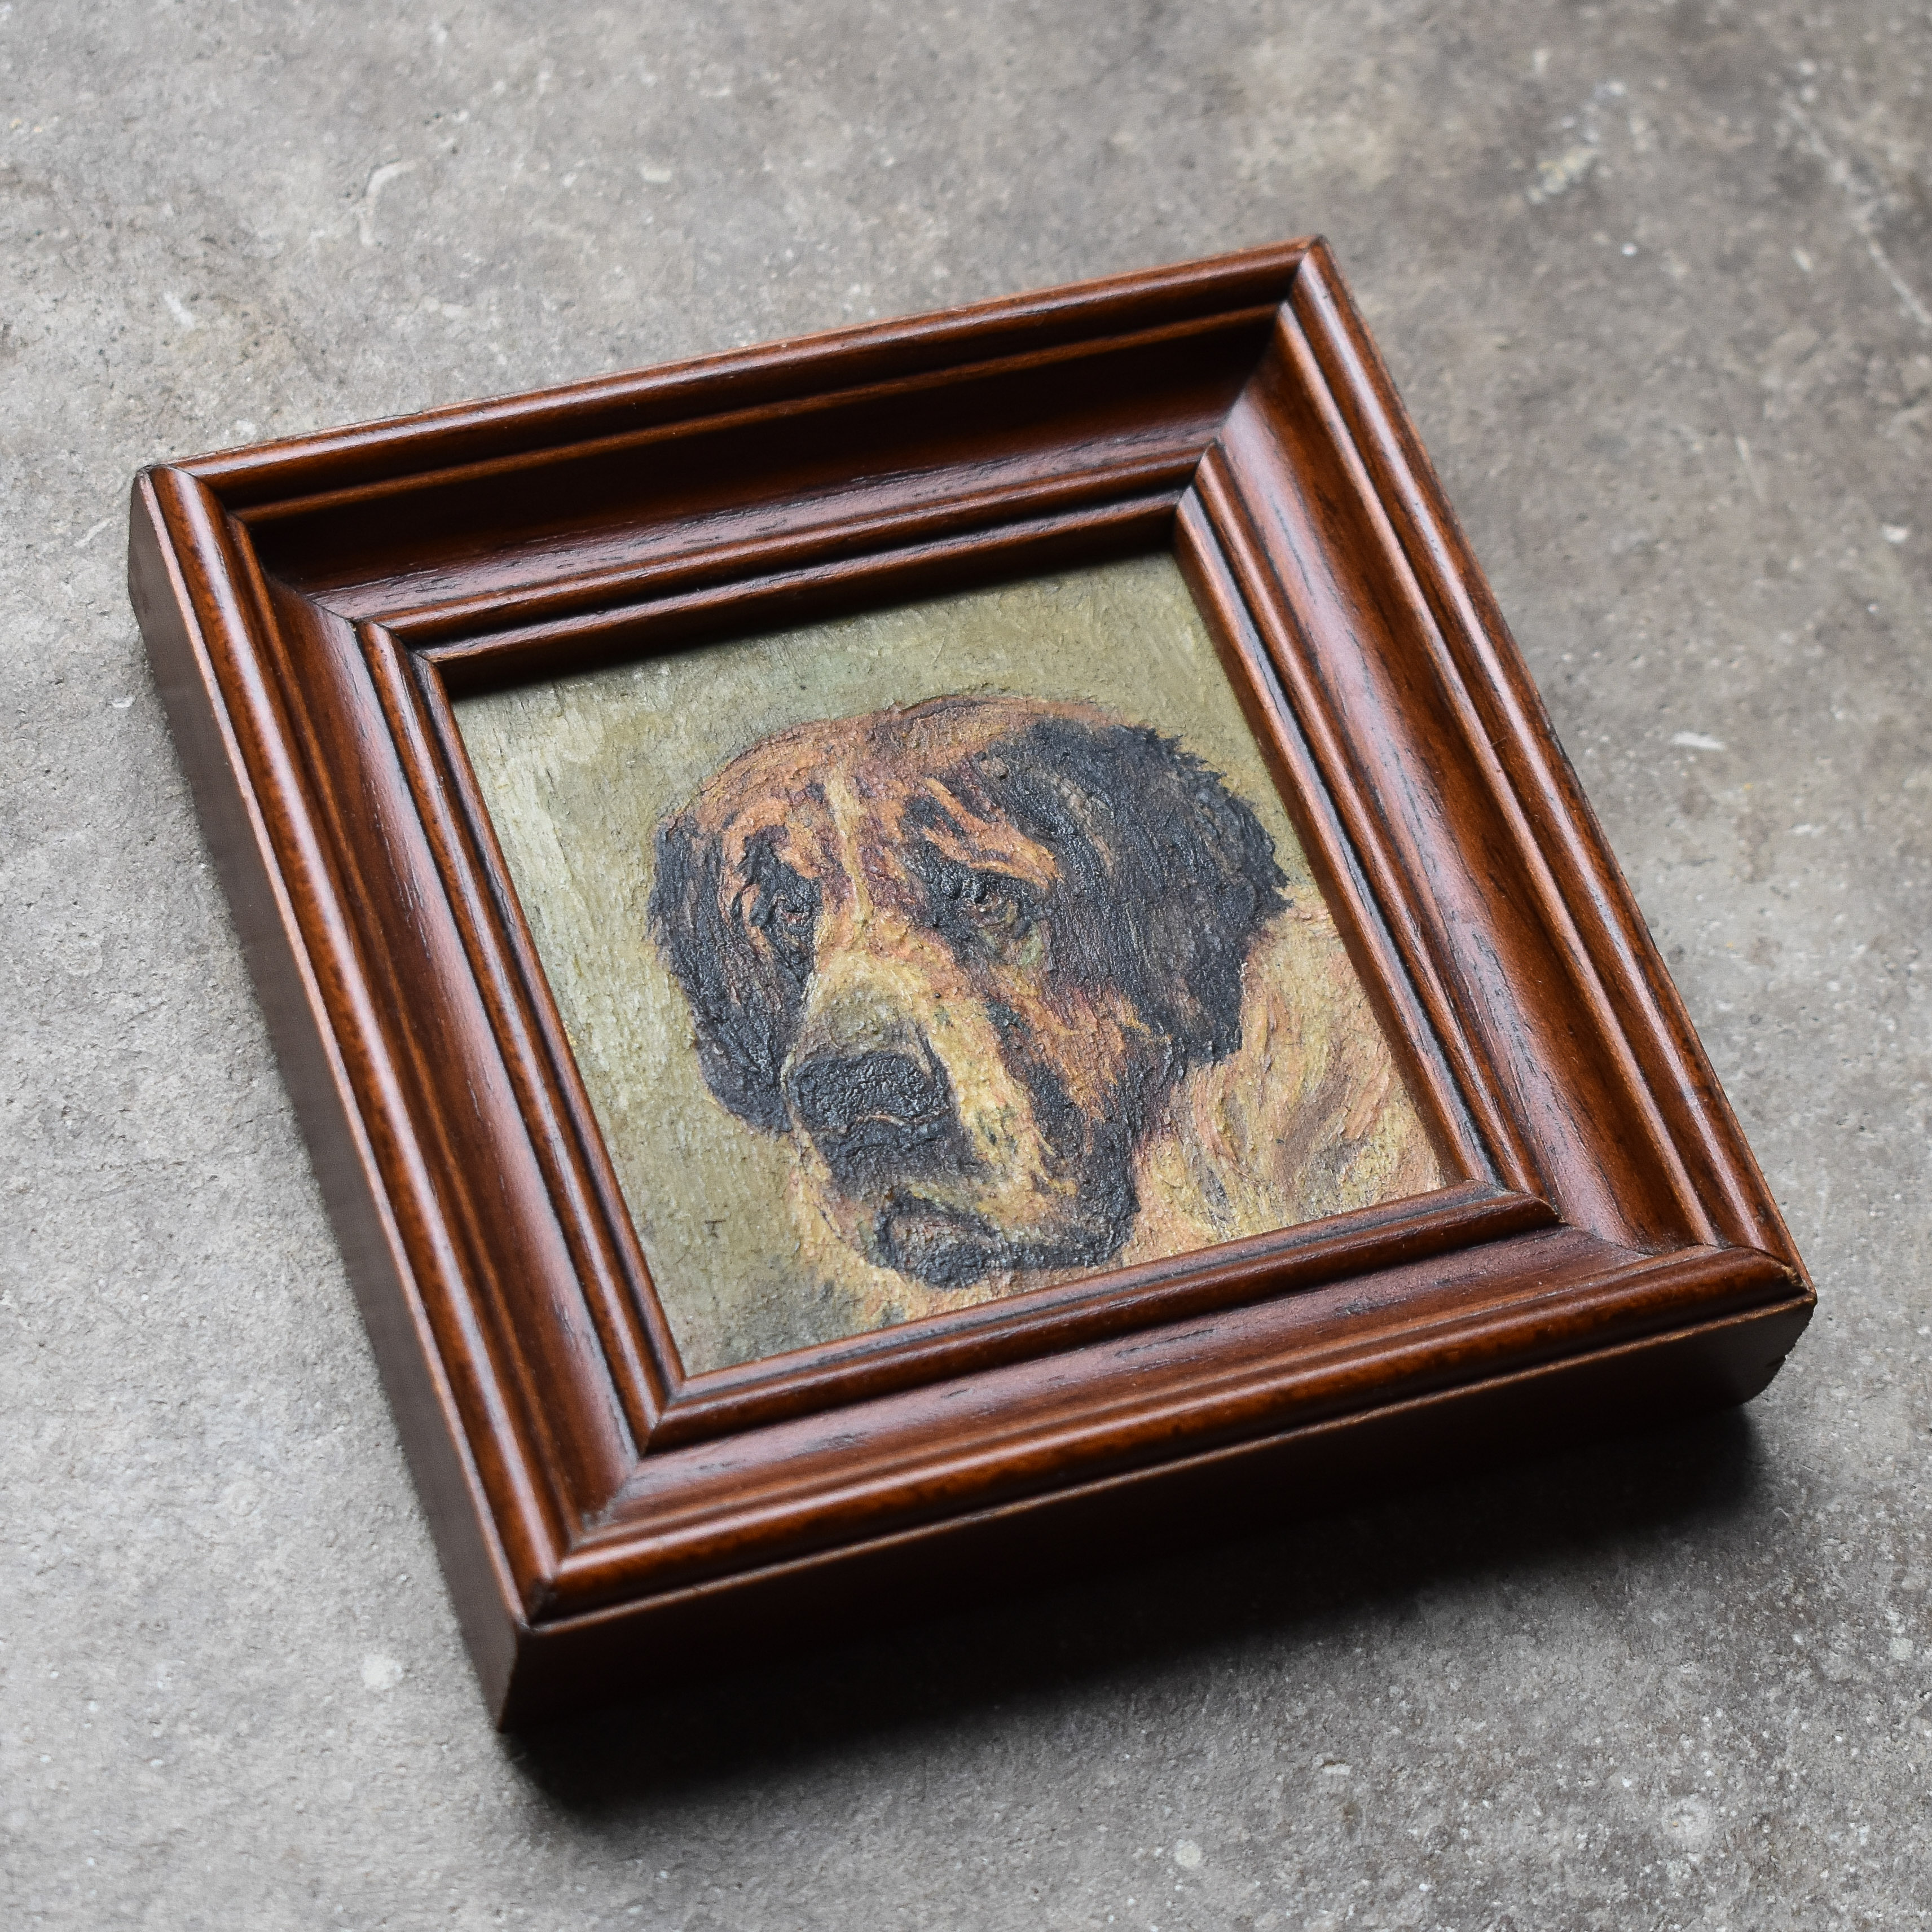 Antique Vintage Early 1900s Mini Oil Portrait Painting Saint Bernard Dog Pet Art Decor Cabin Lodge Ranch Decor